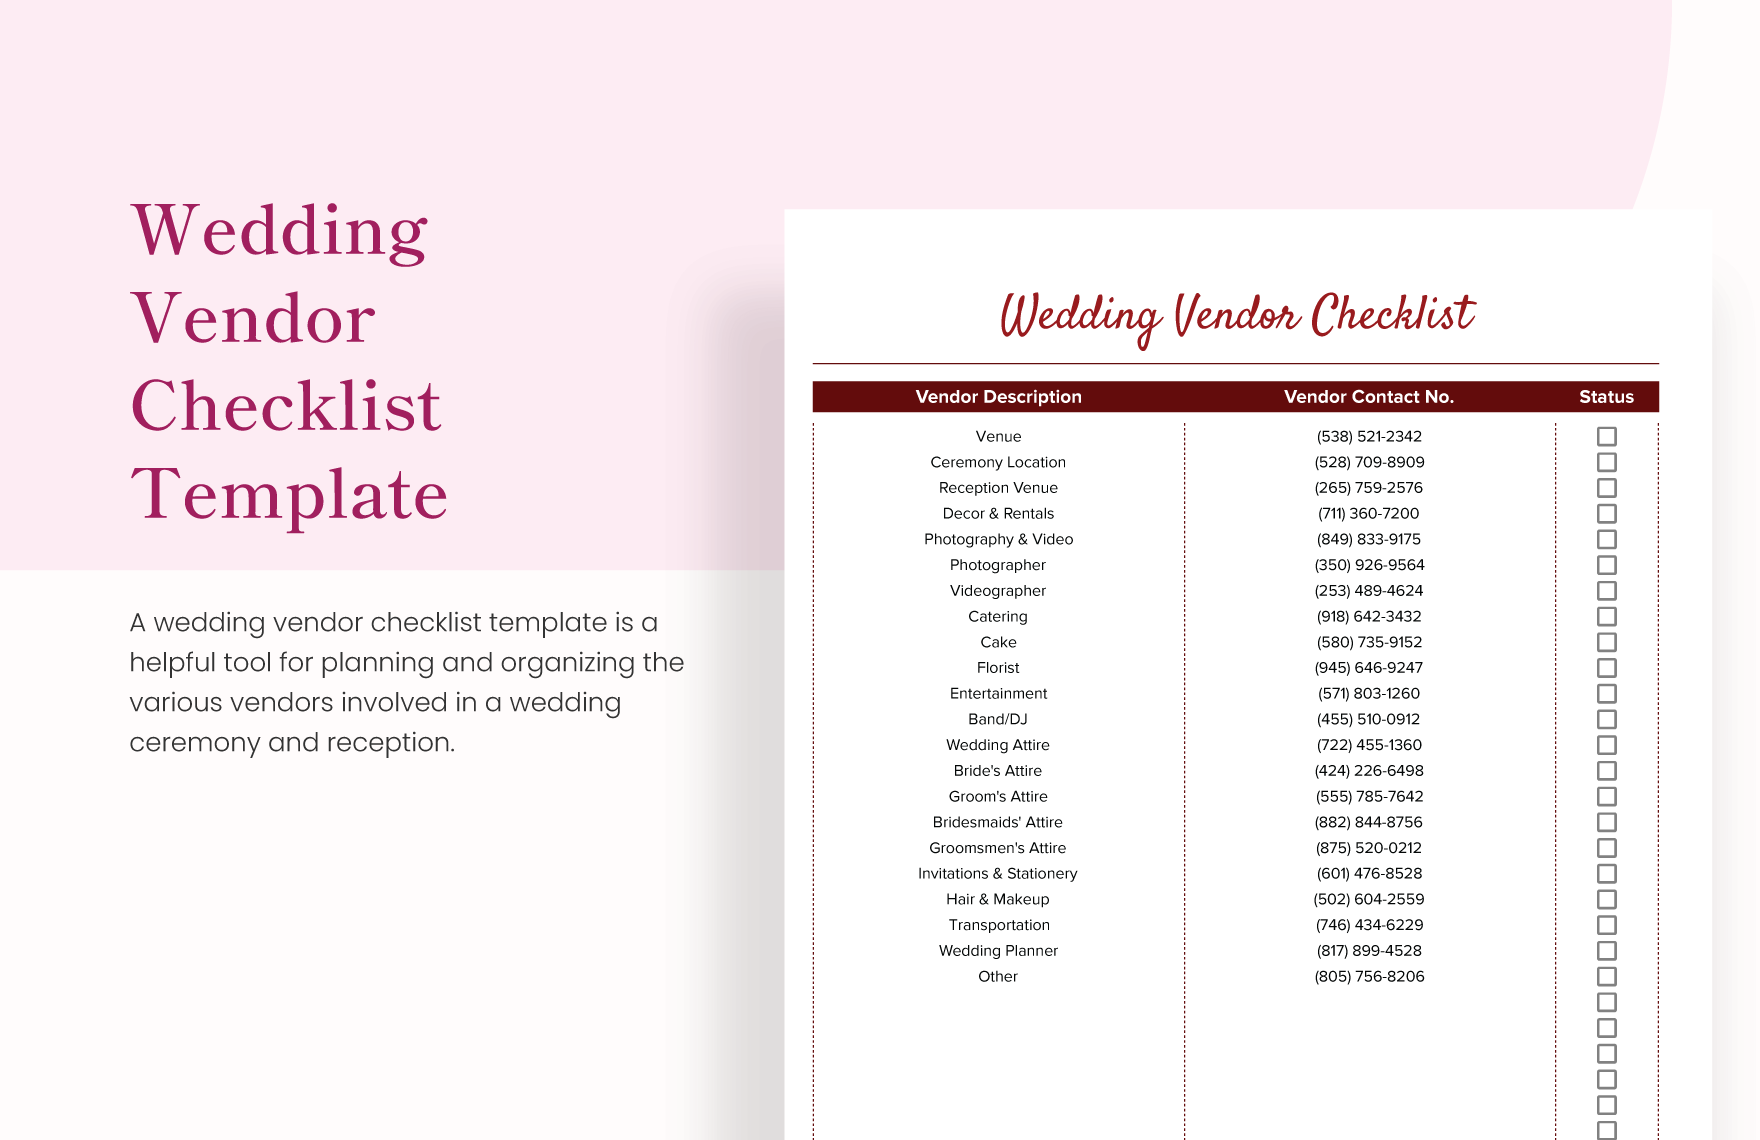 Wedding Vendor Checklist Template in Excel, Google Sheets